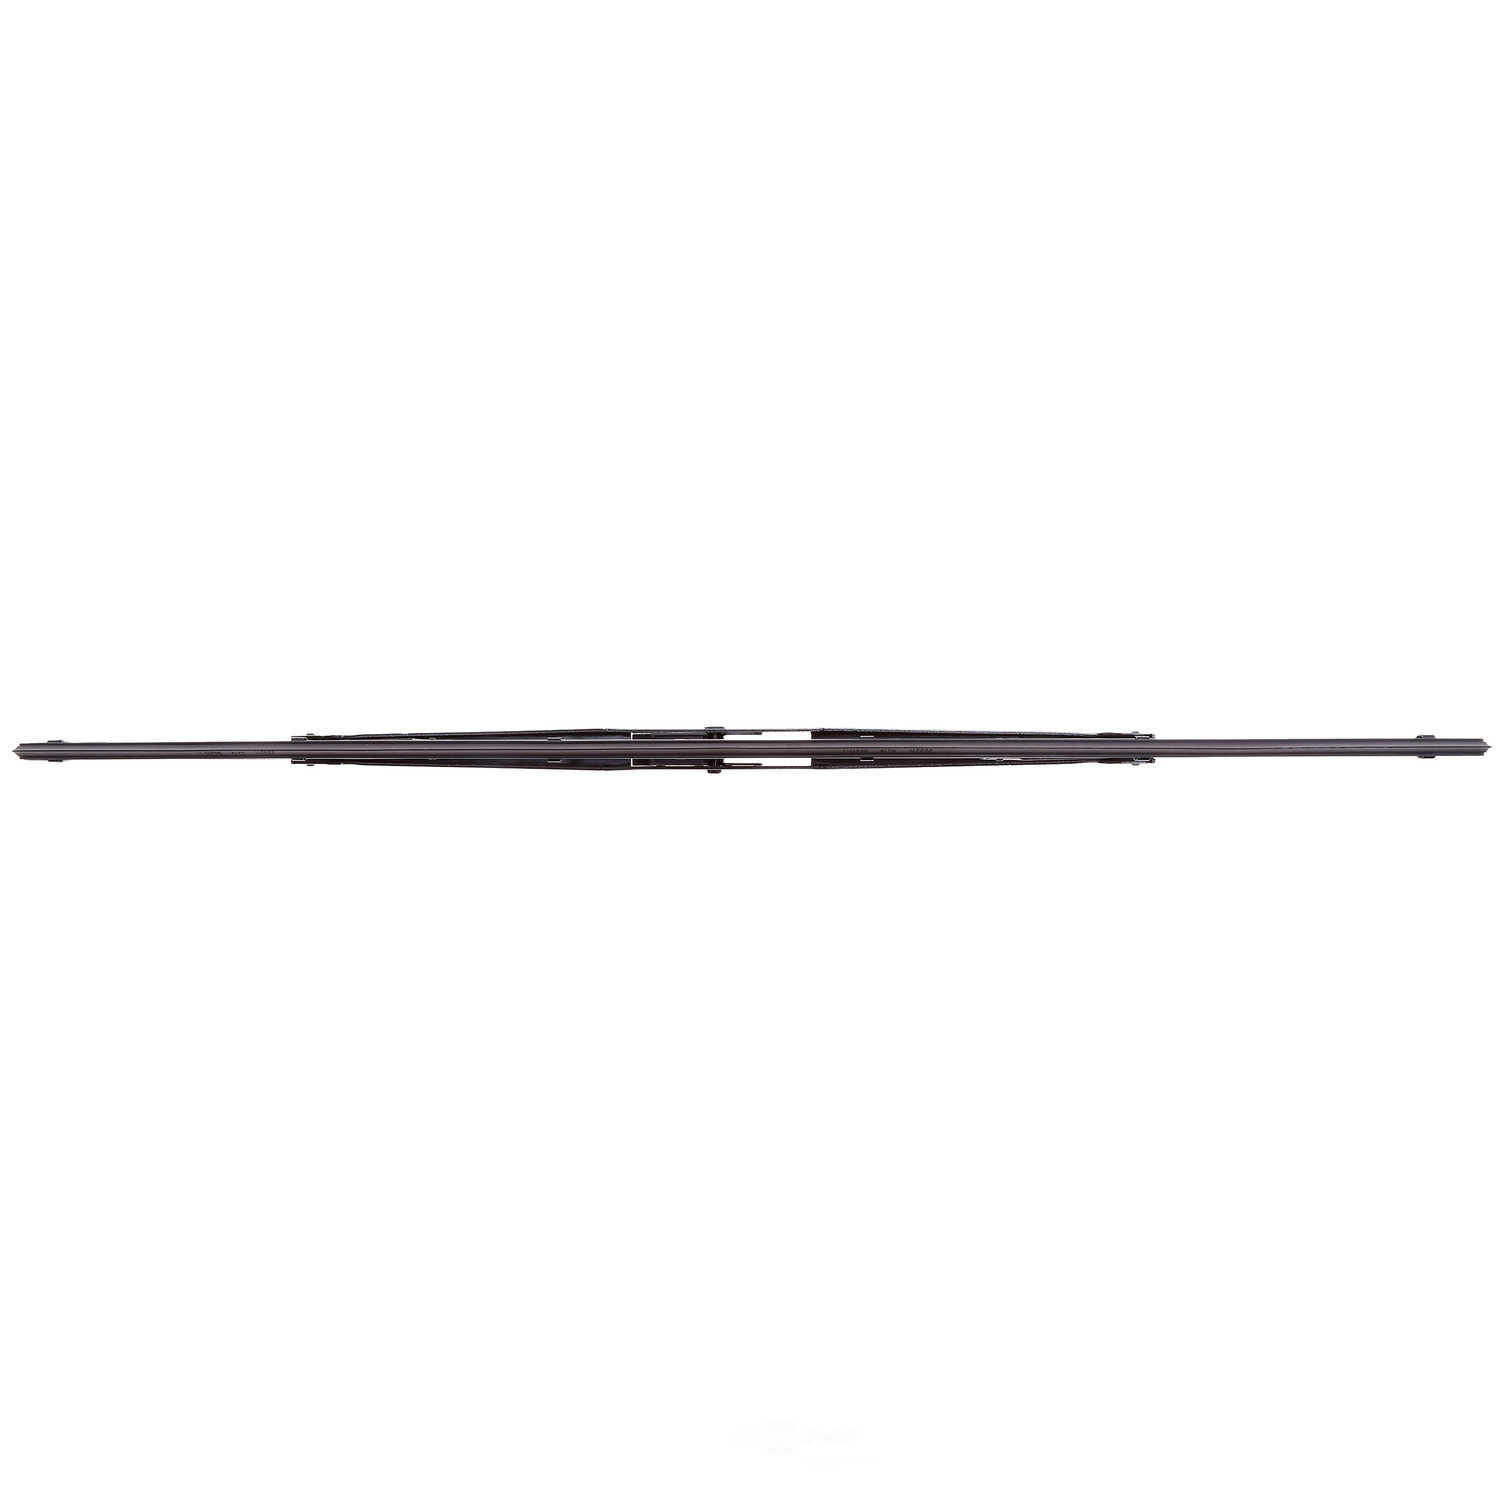 ANCO WIPER PRODUCTS - ANCO 14-Series Wiper Blade - ANC 14C-19